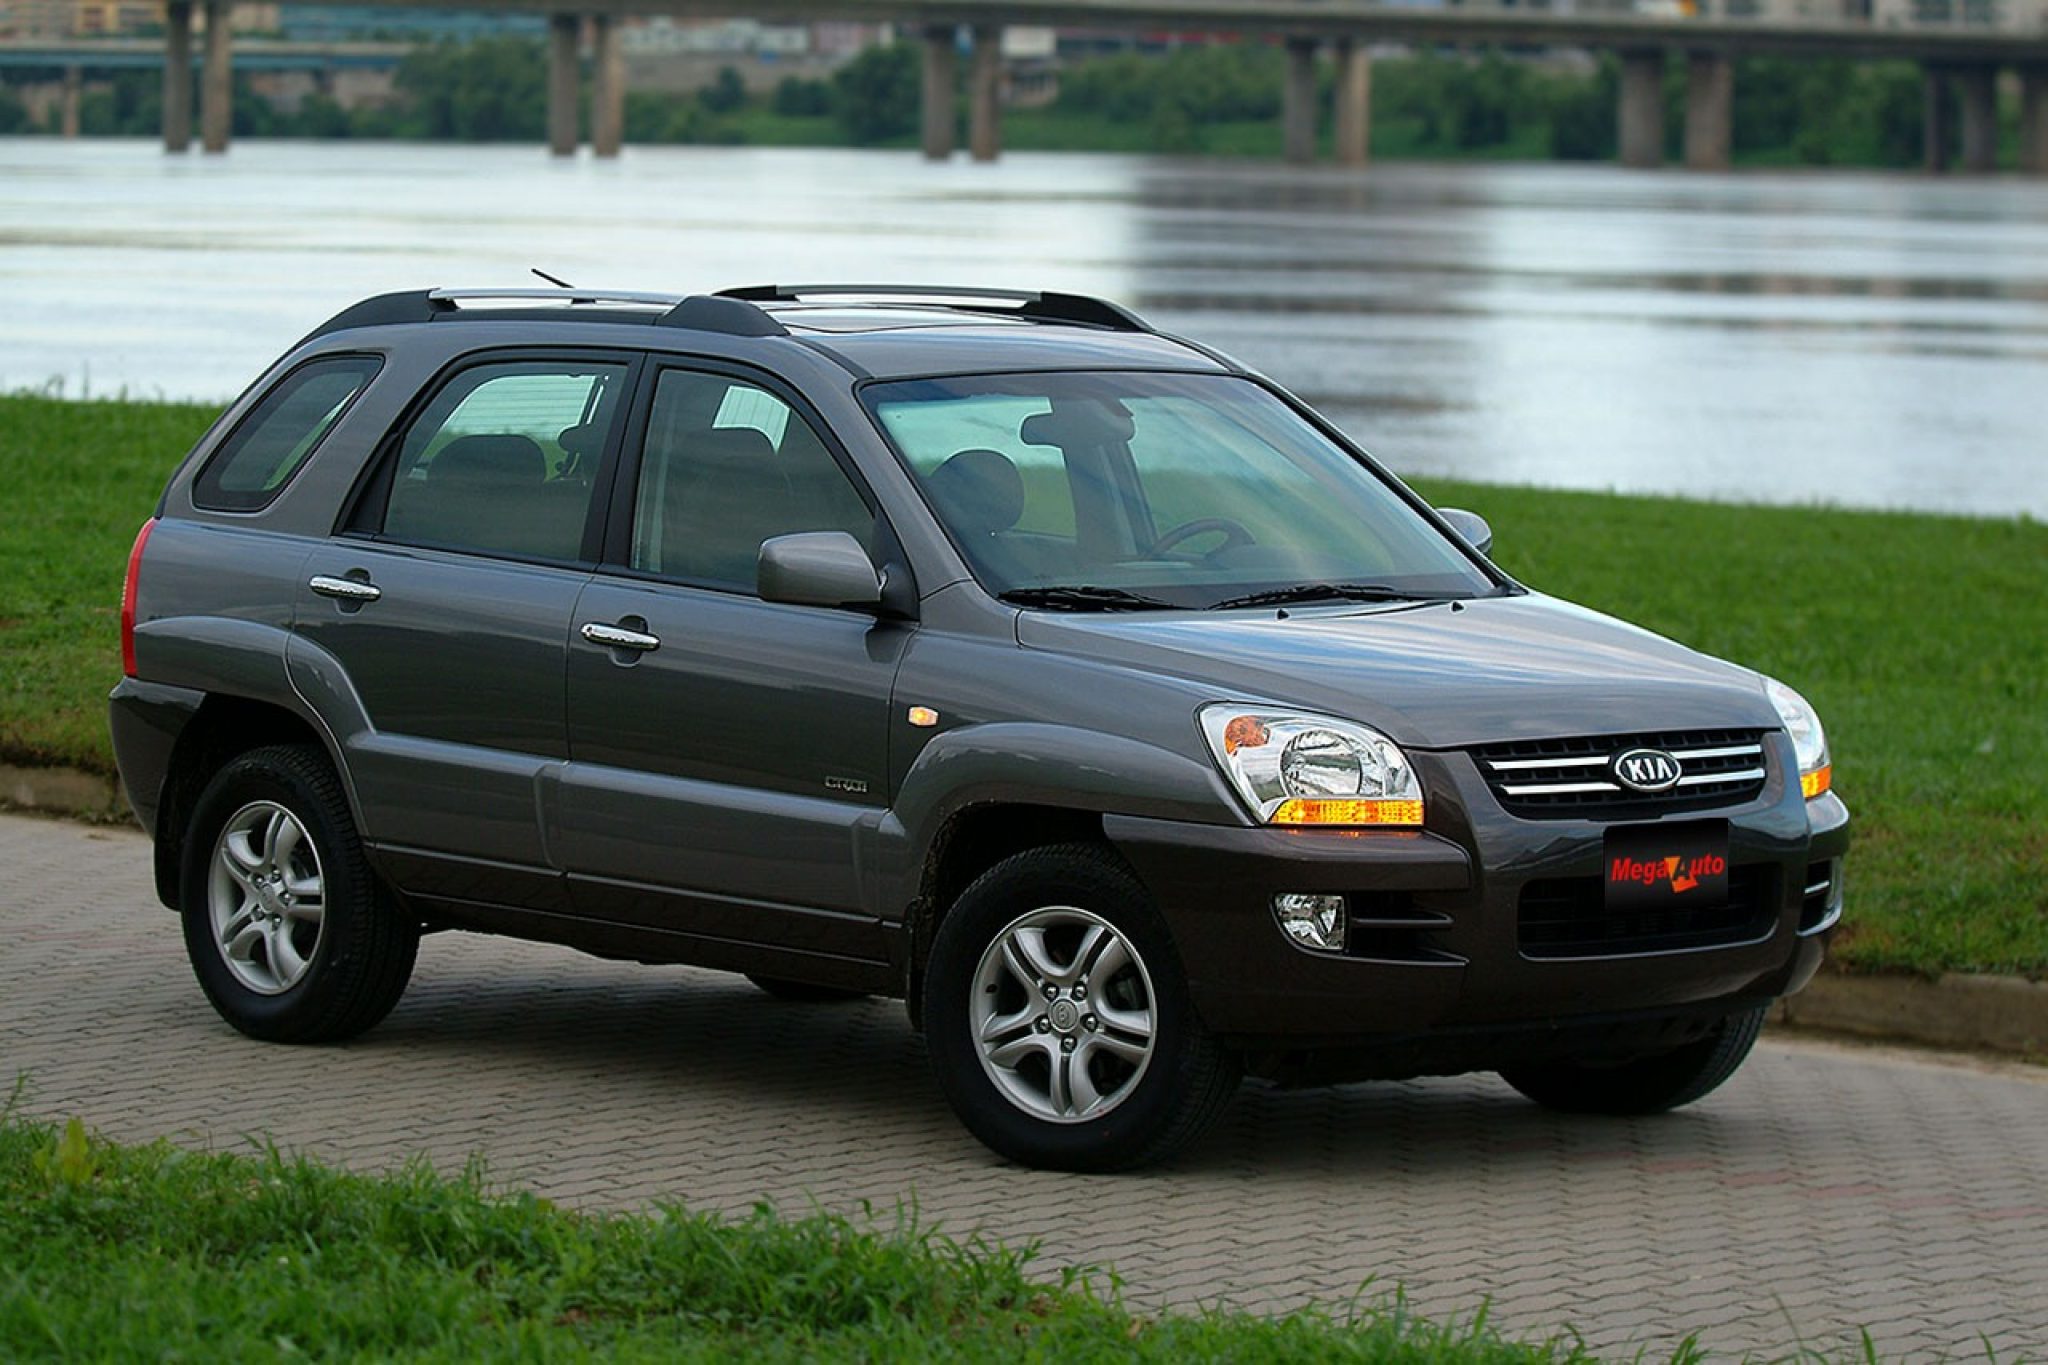 Киа второго поколения. Kia Sportage II 2004-2010. Киа Спортаж 2. Kia Sportage 2008-2010. Kia Sportage II 2004 - 2008.